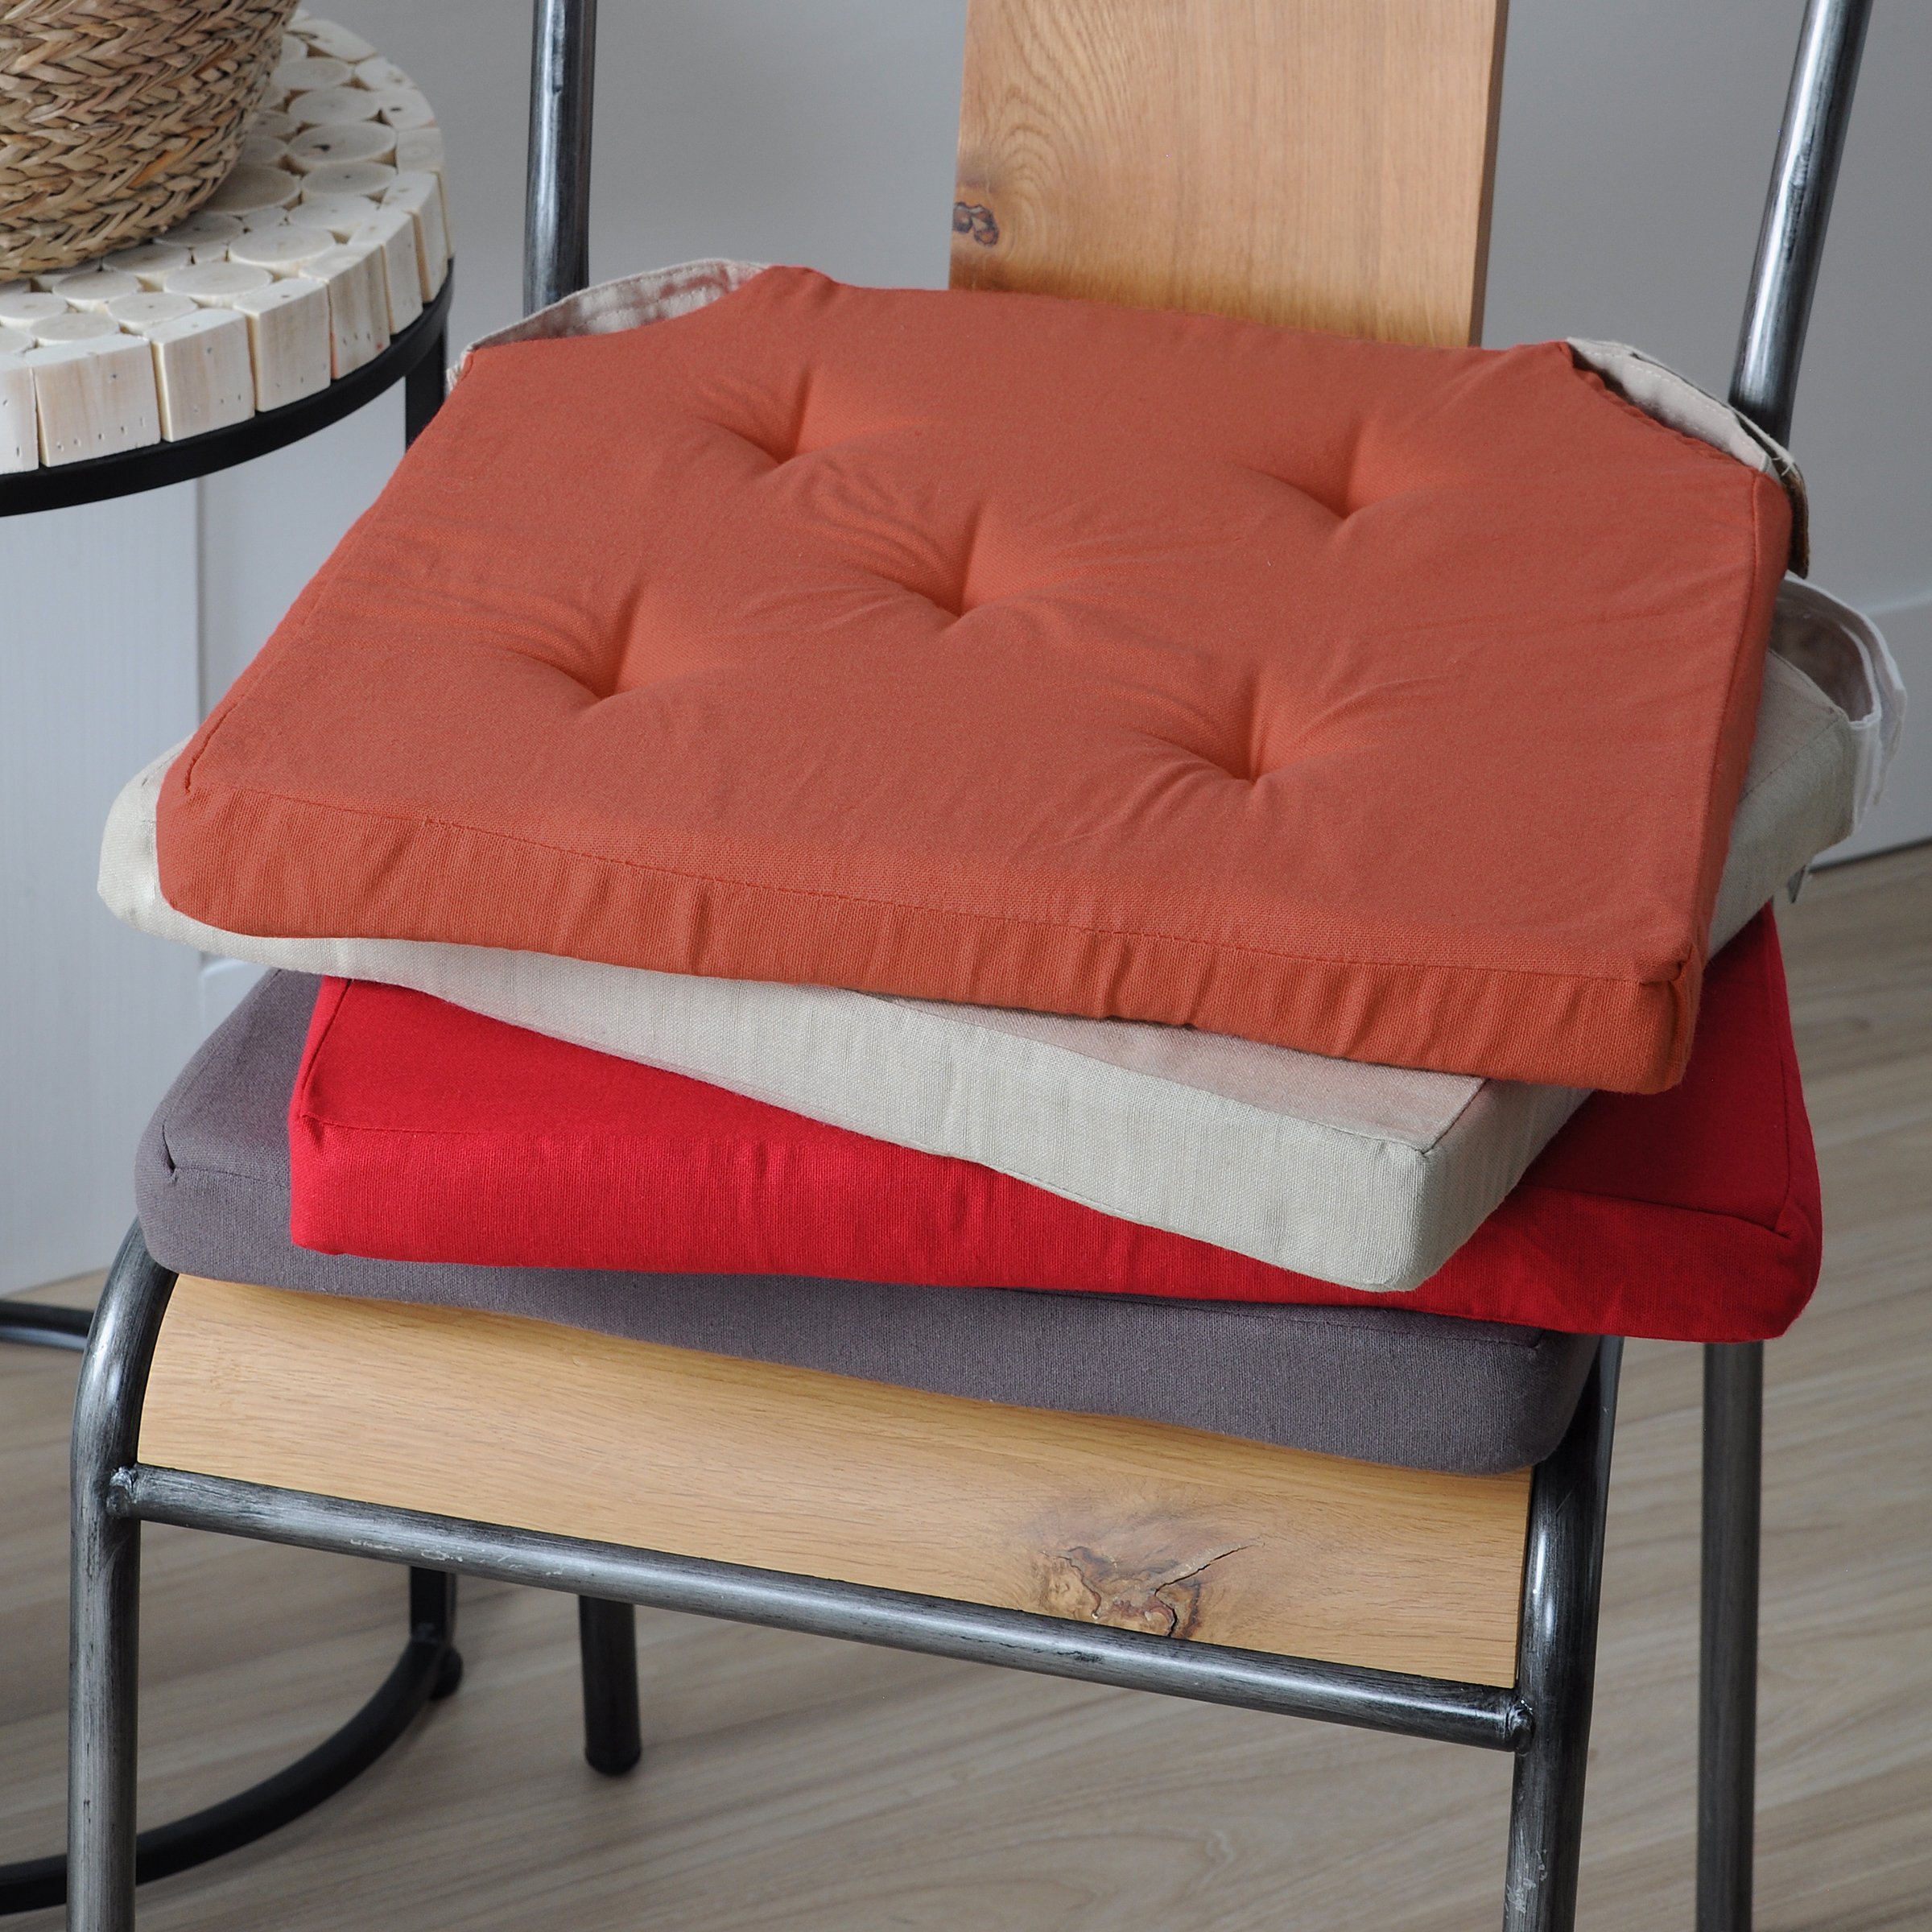 Galette de chaise carrée à rabats Béa Noir Charbon - Déco textile - Eminza